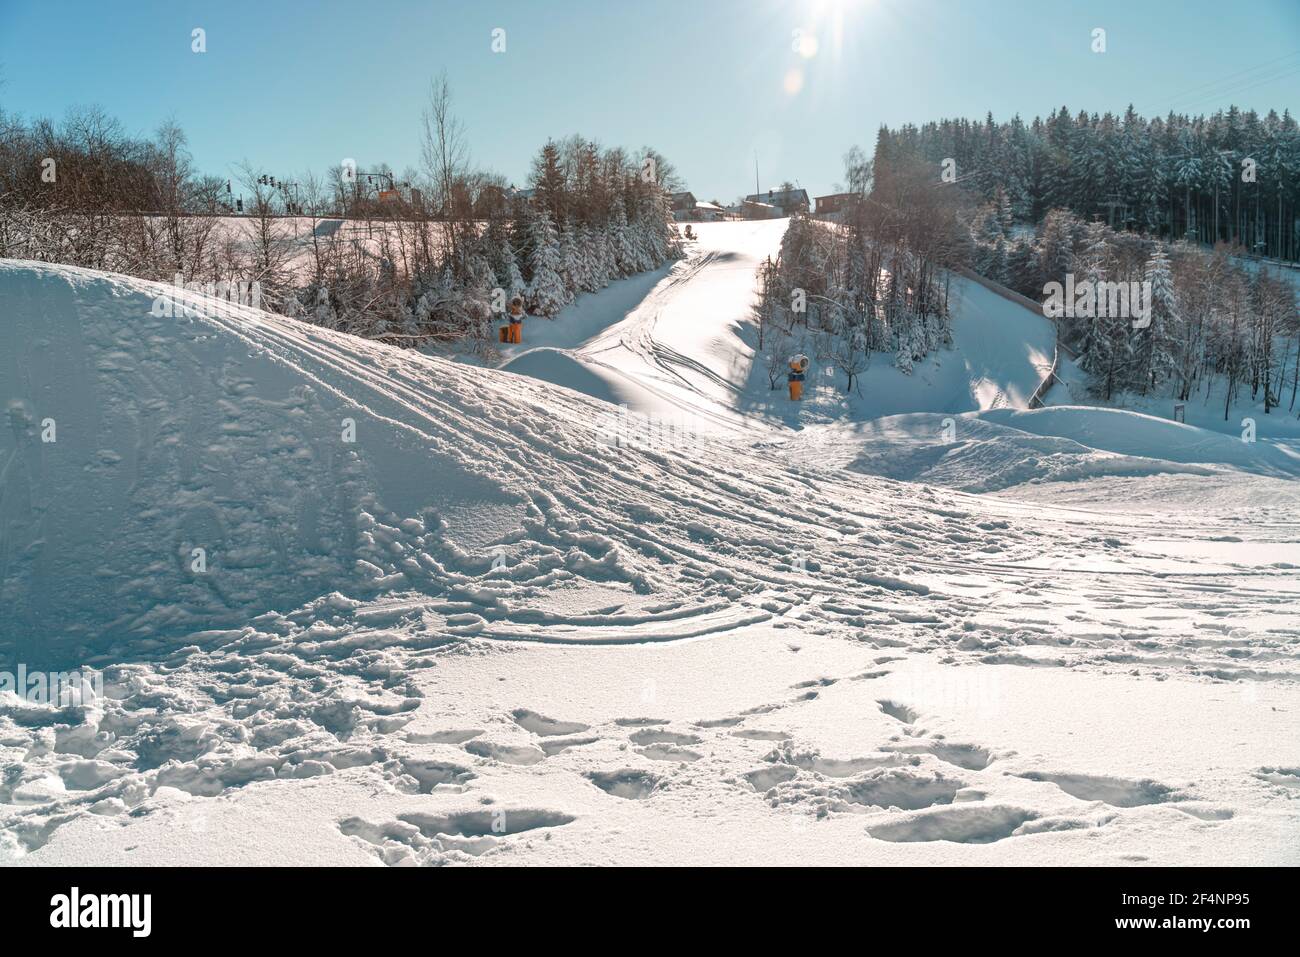 Wintersportgebiet mit Schnee und Sonnenschein. Schneesprünge bieten Möglichkeiten für Ski Cross oder Snowboard Cross. Winterberg, Deutschland Stockfoto